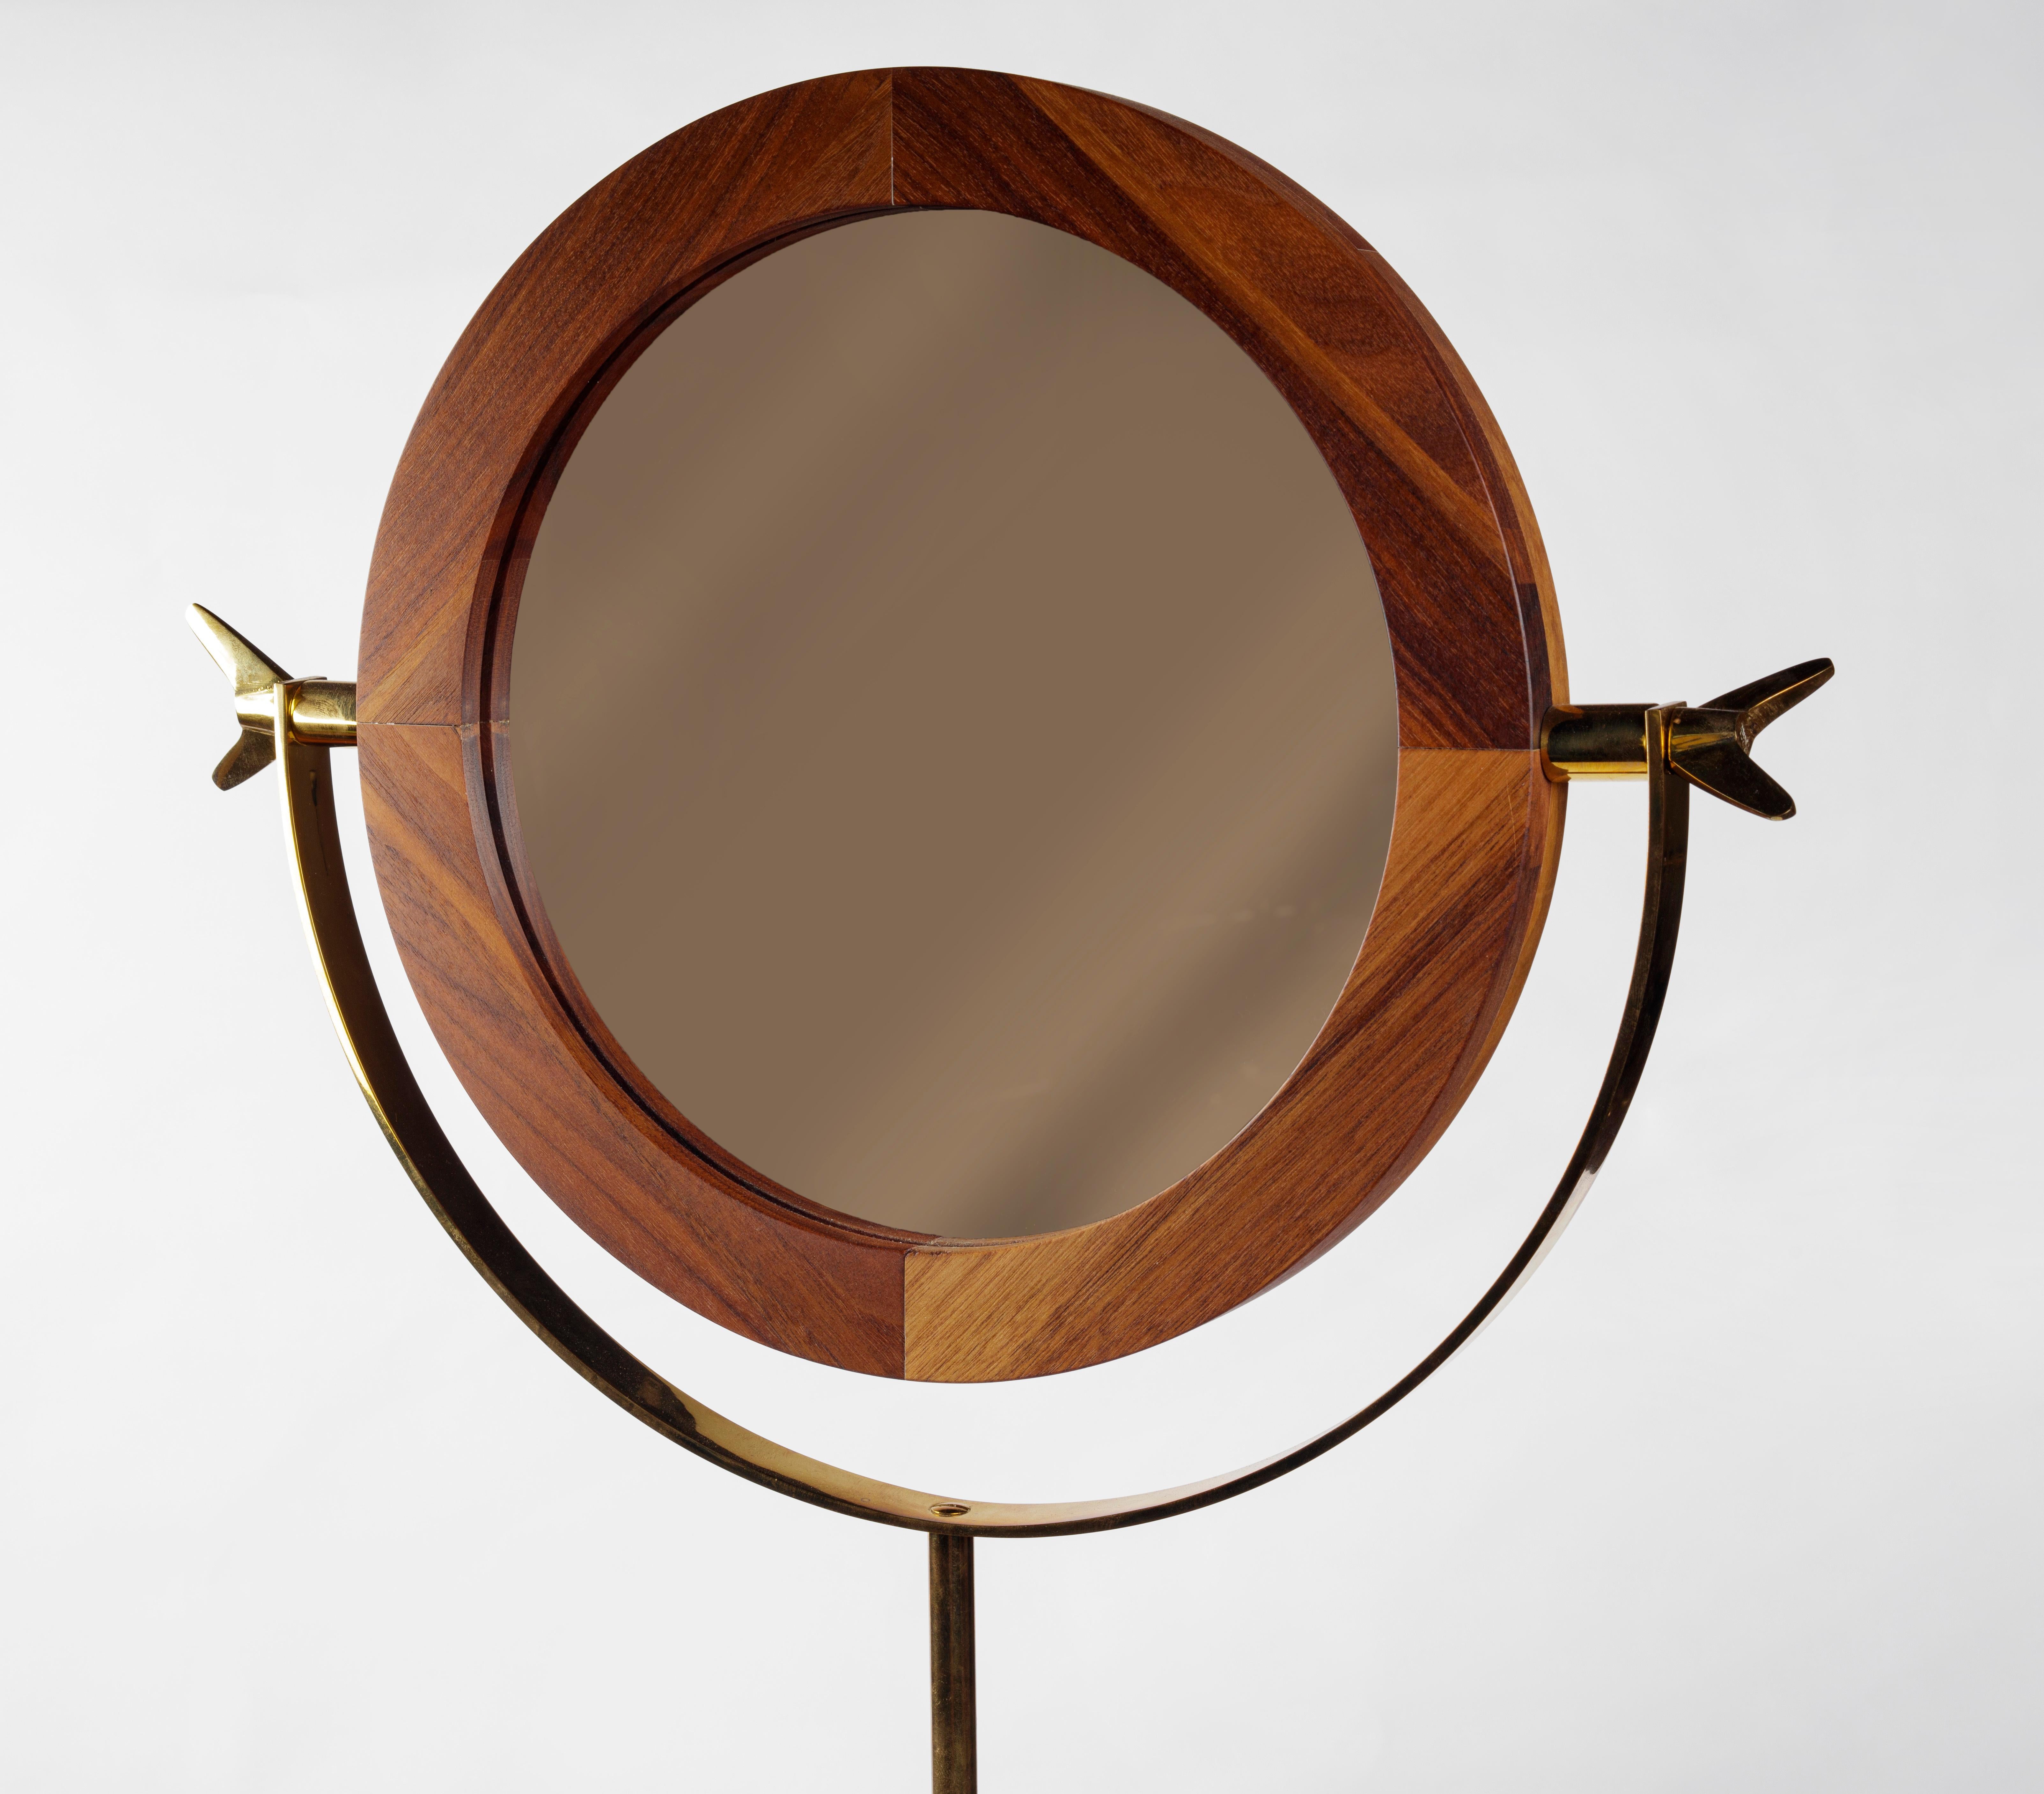 Floor mirror #4959 by Carl Auböck in brass and walnut.

